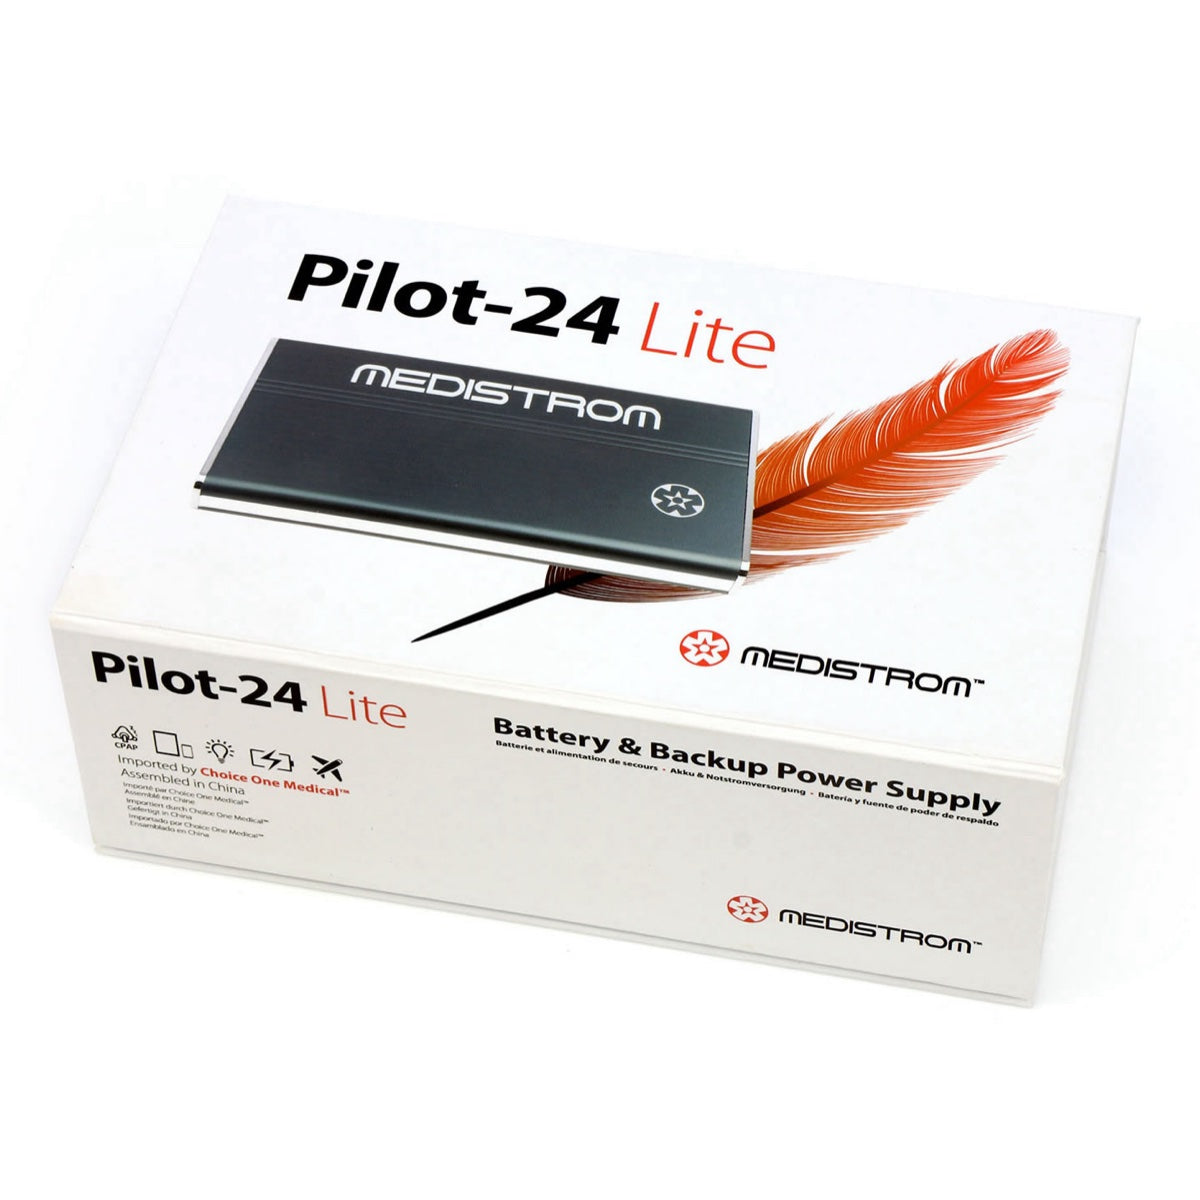 Pilot-24 Lite in the box